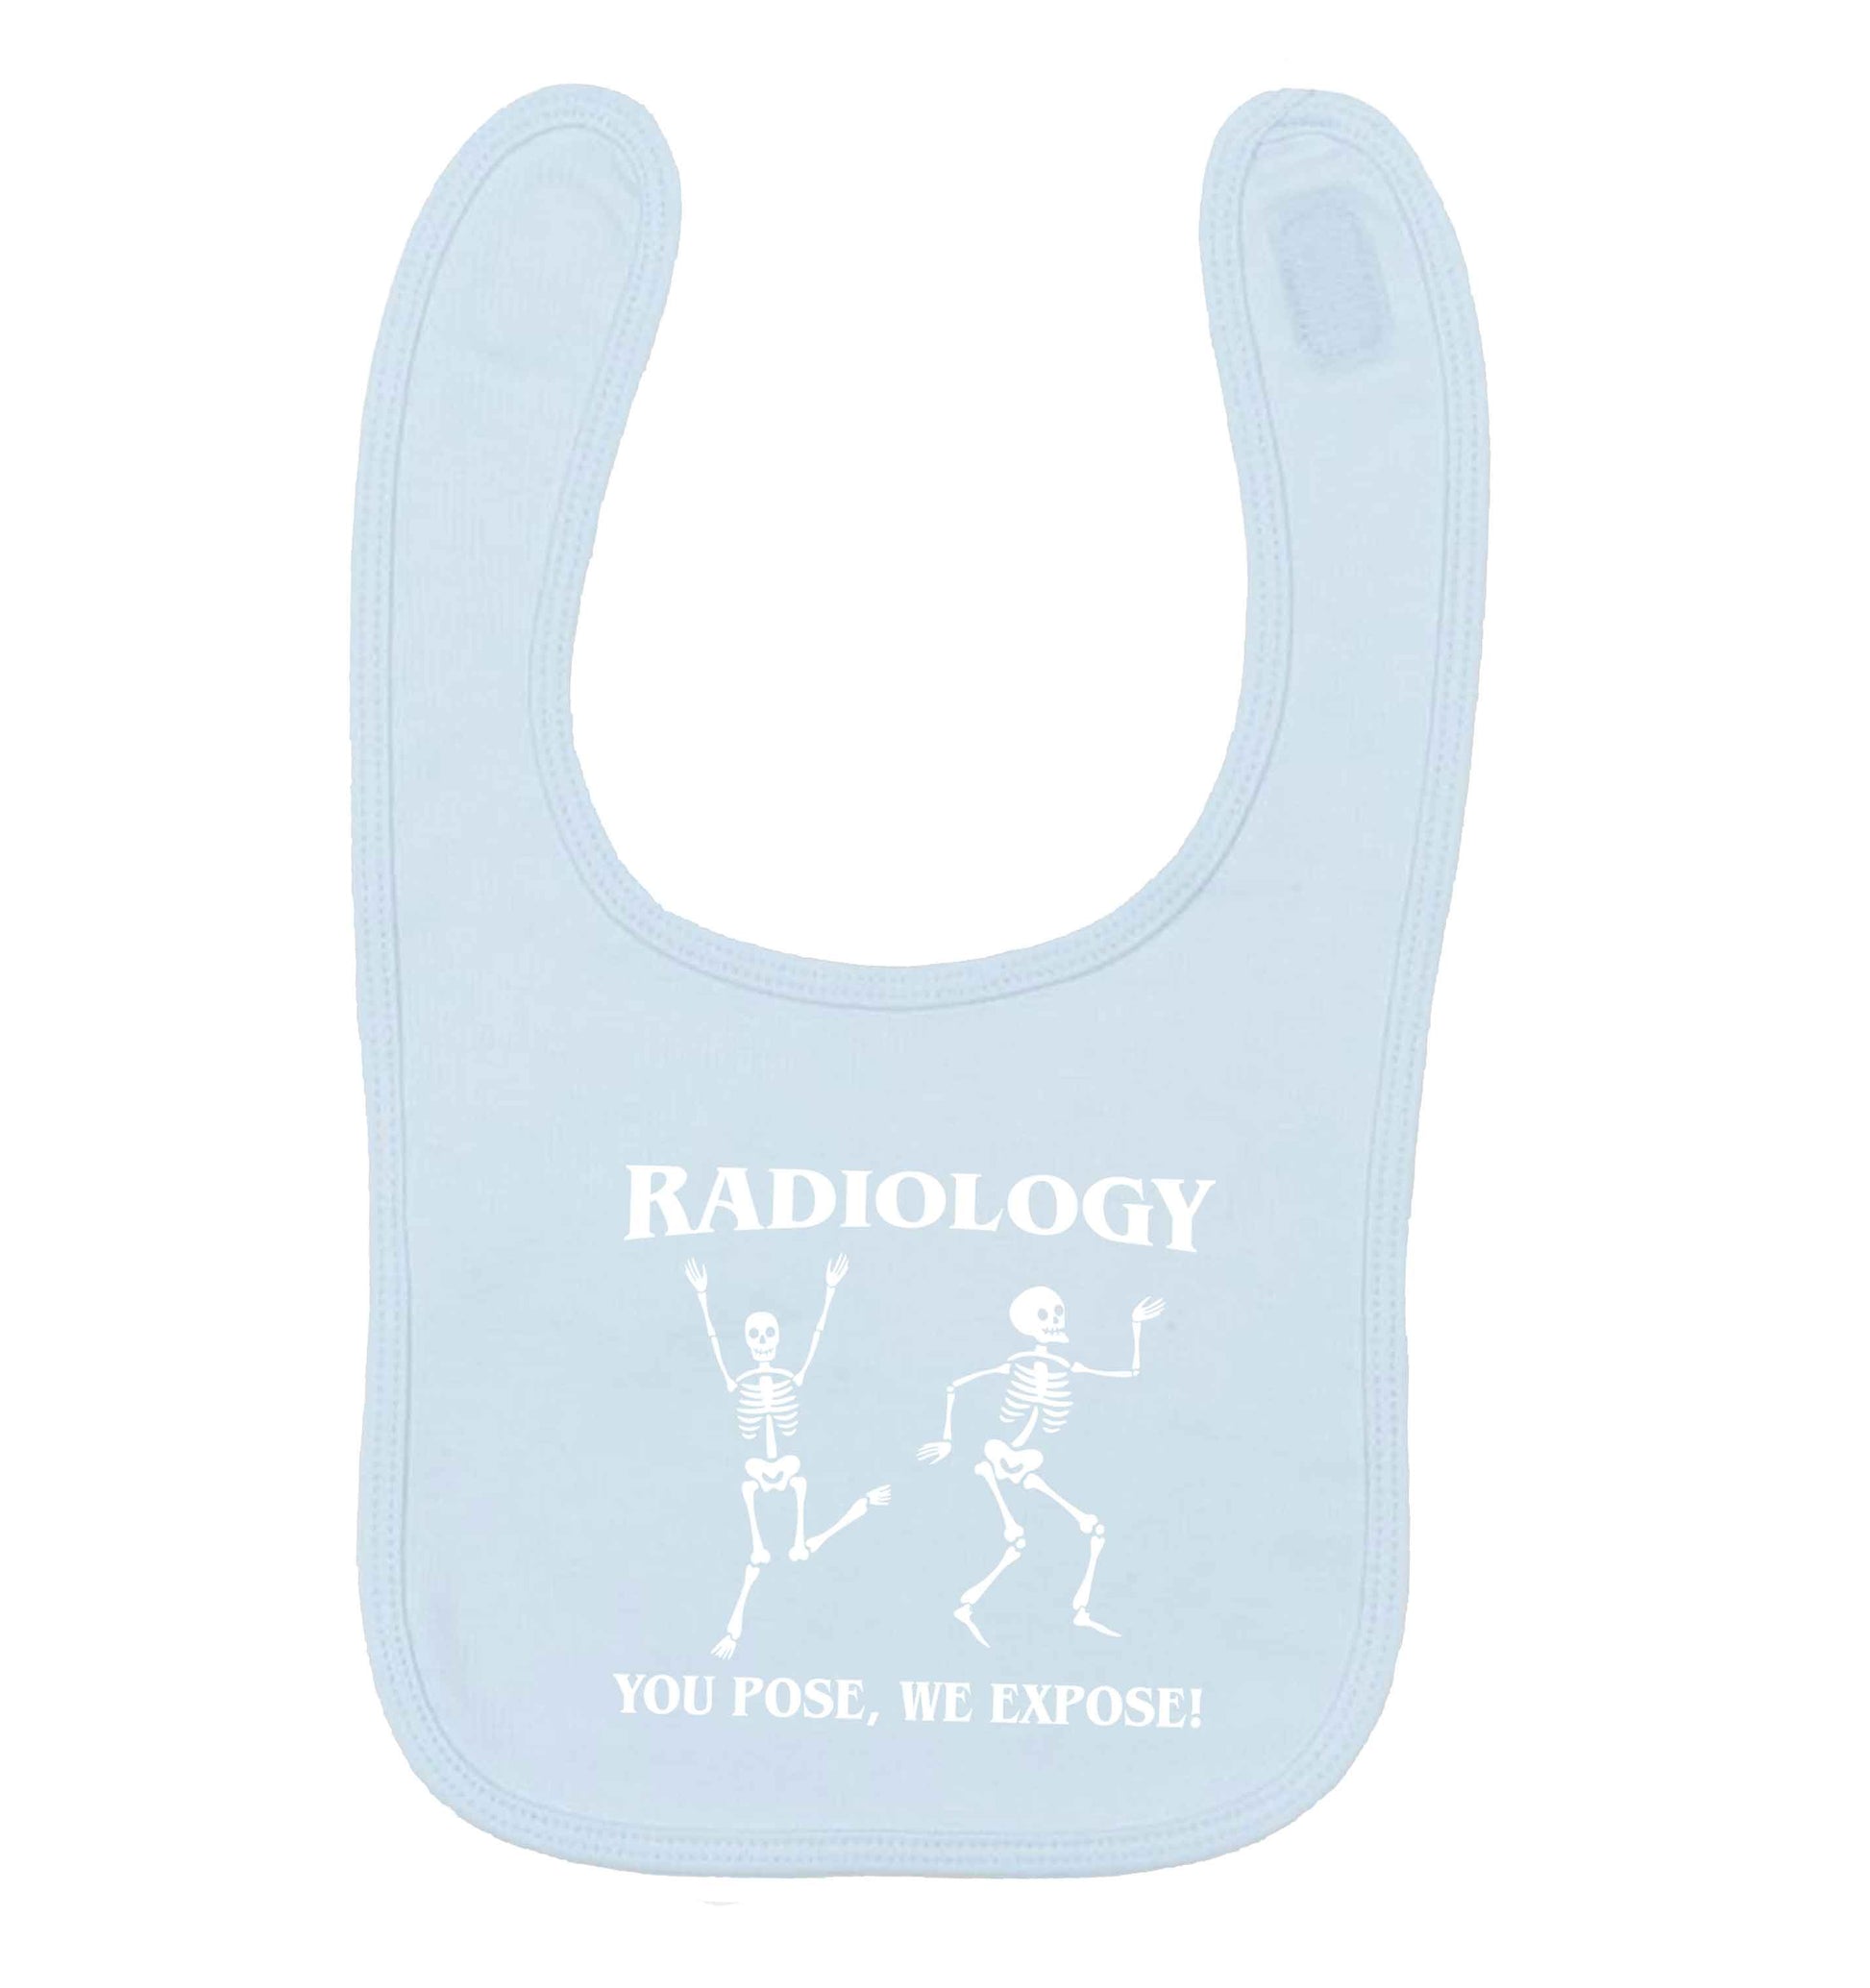 Radiology you pose we expose pale blue baby bib